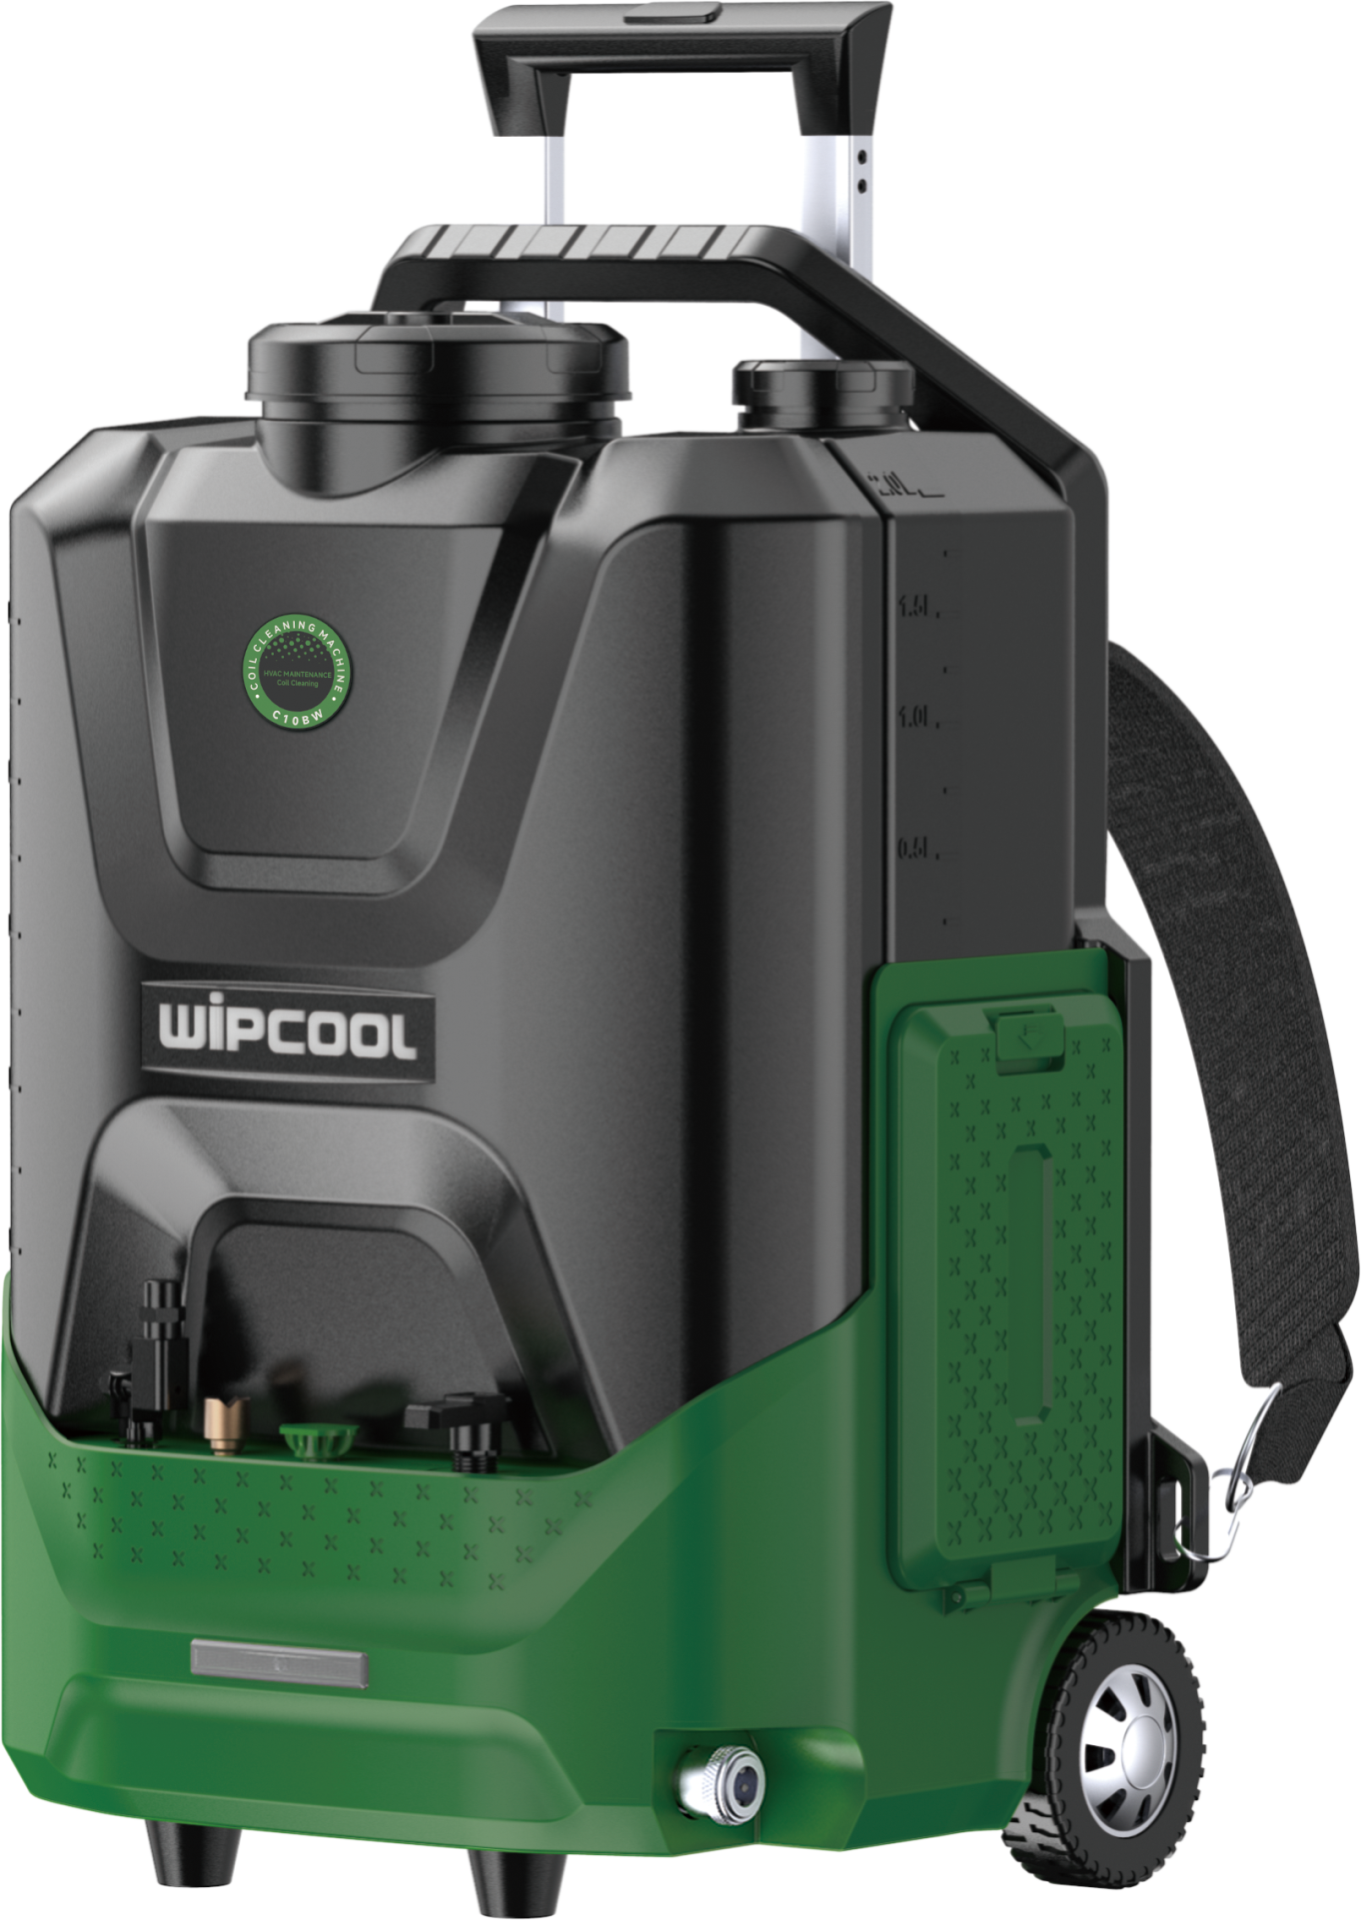 Wipcool - C10BW - Kablosuz Temizleme Makinası (Batarya dahil değil)